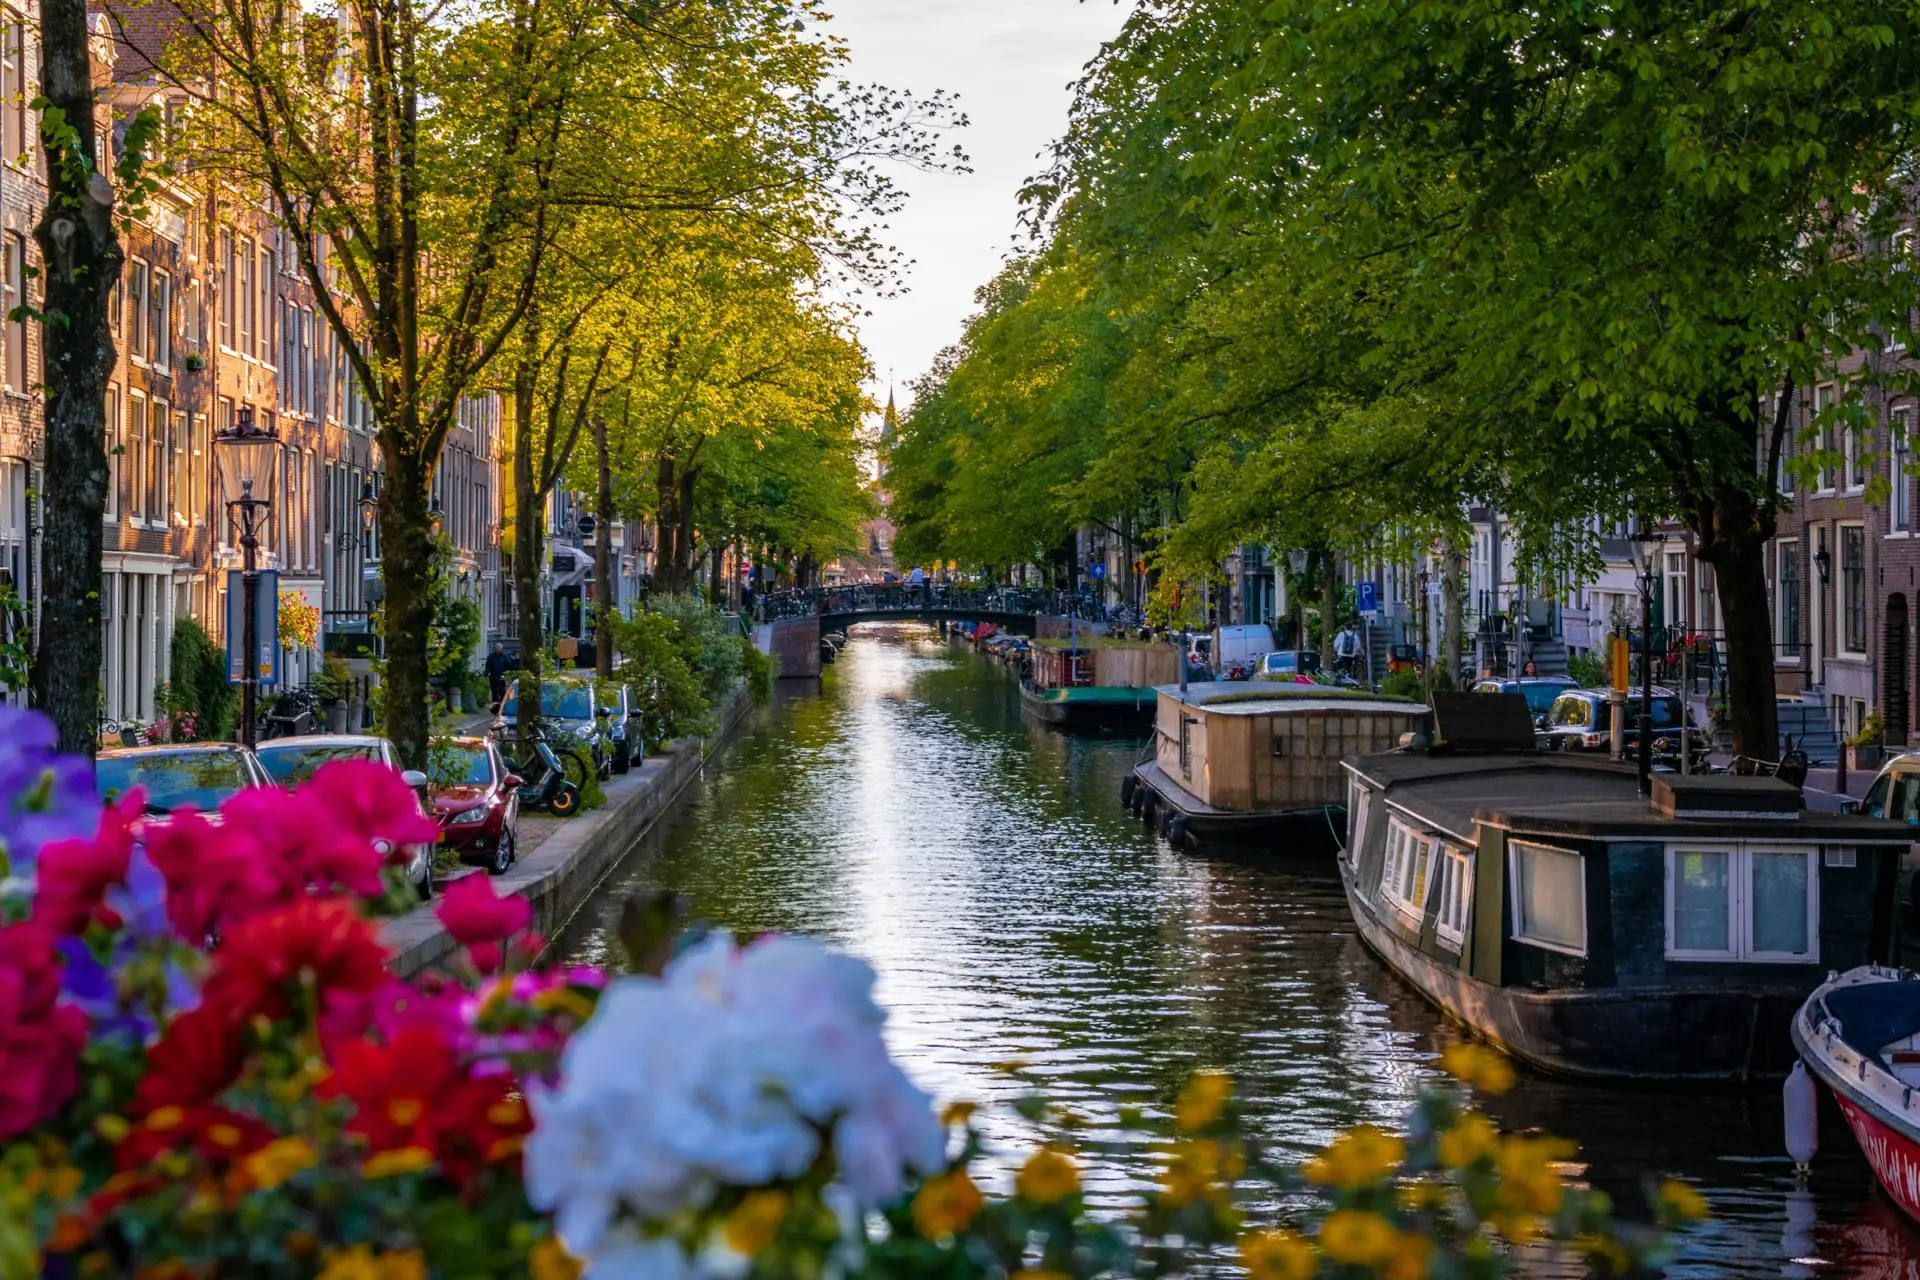 Jordaan canal, Amsterdam